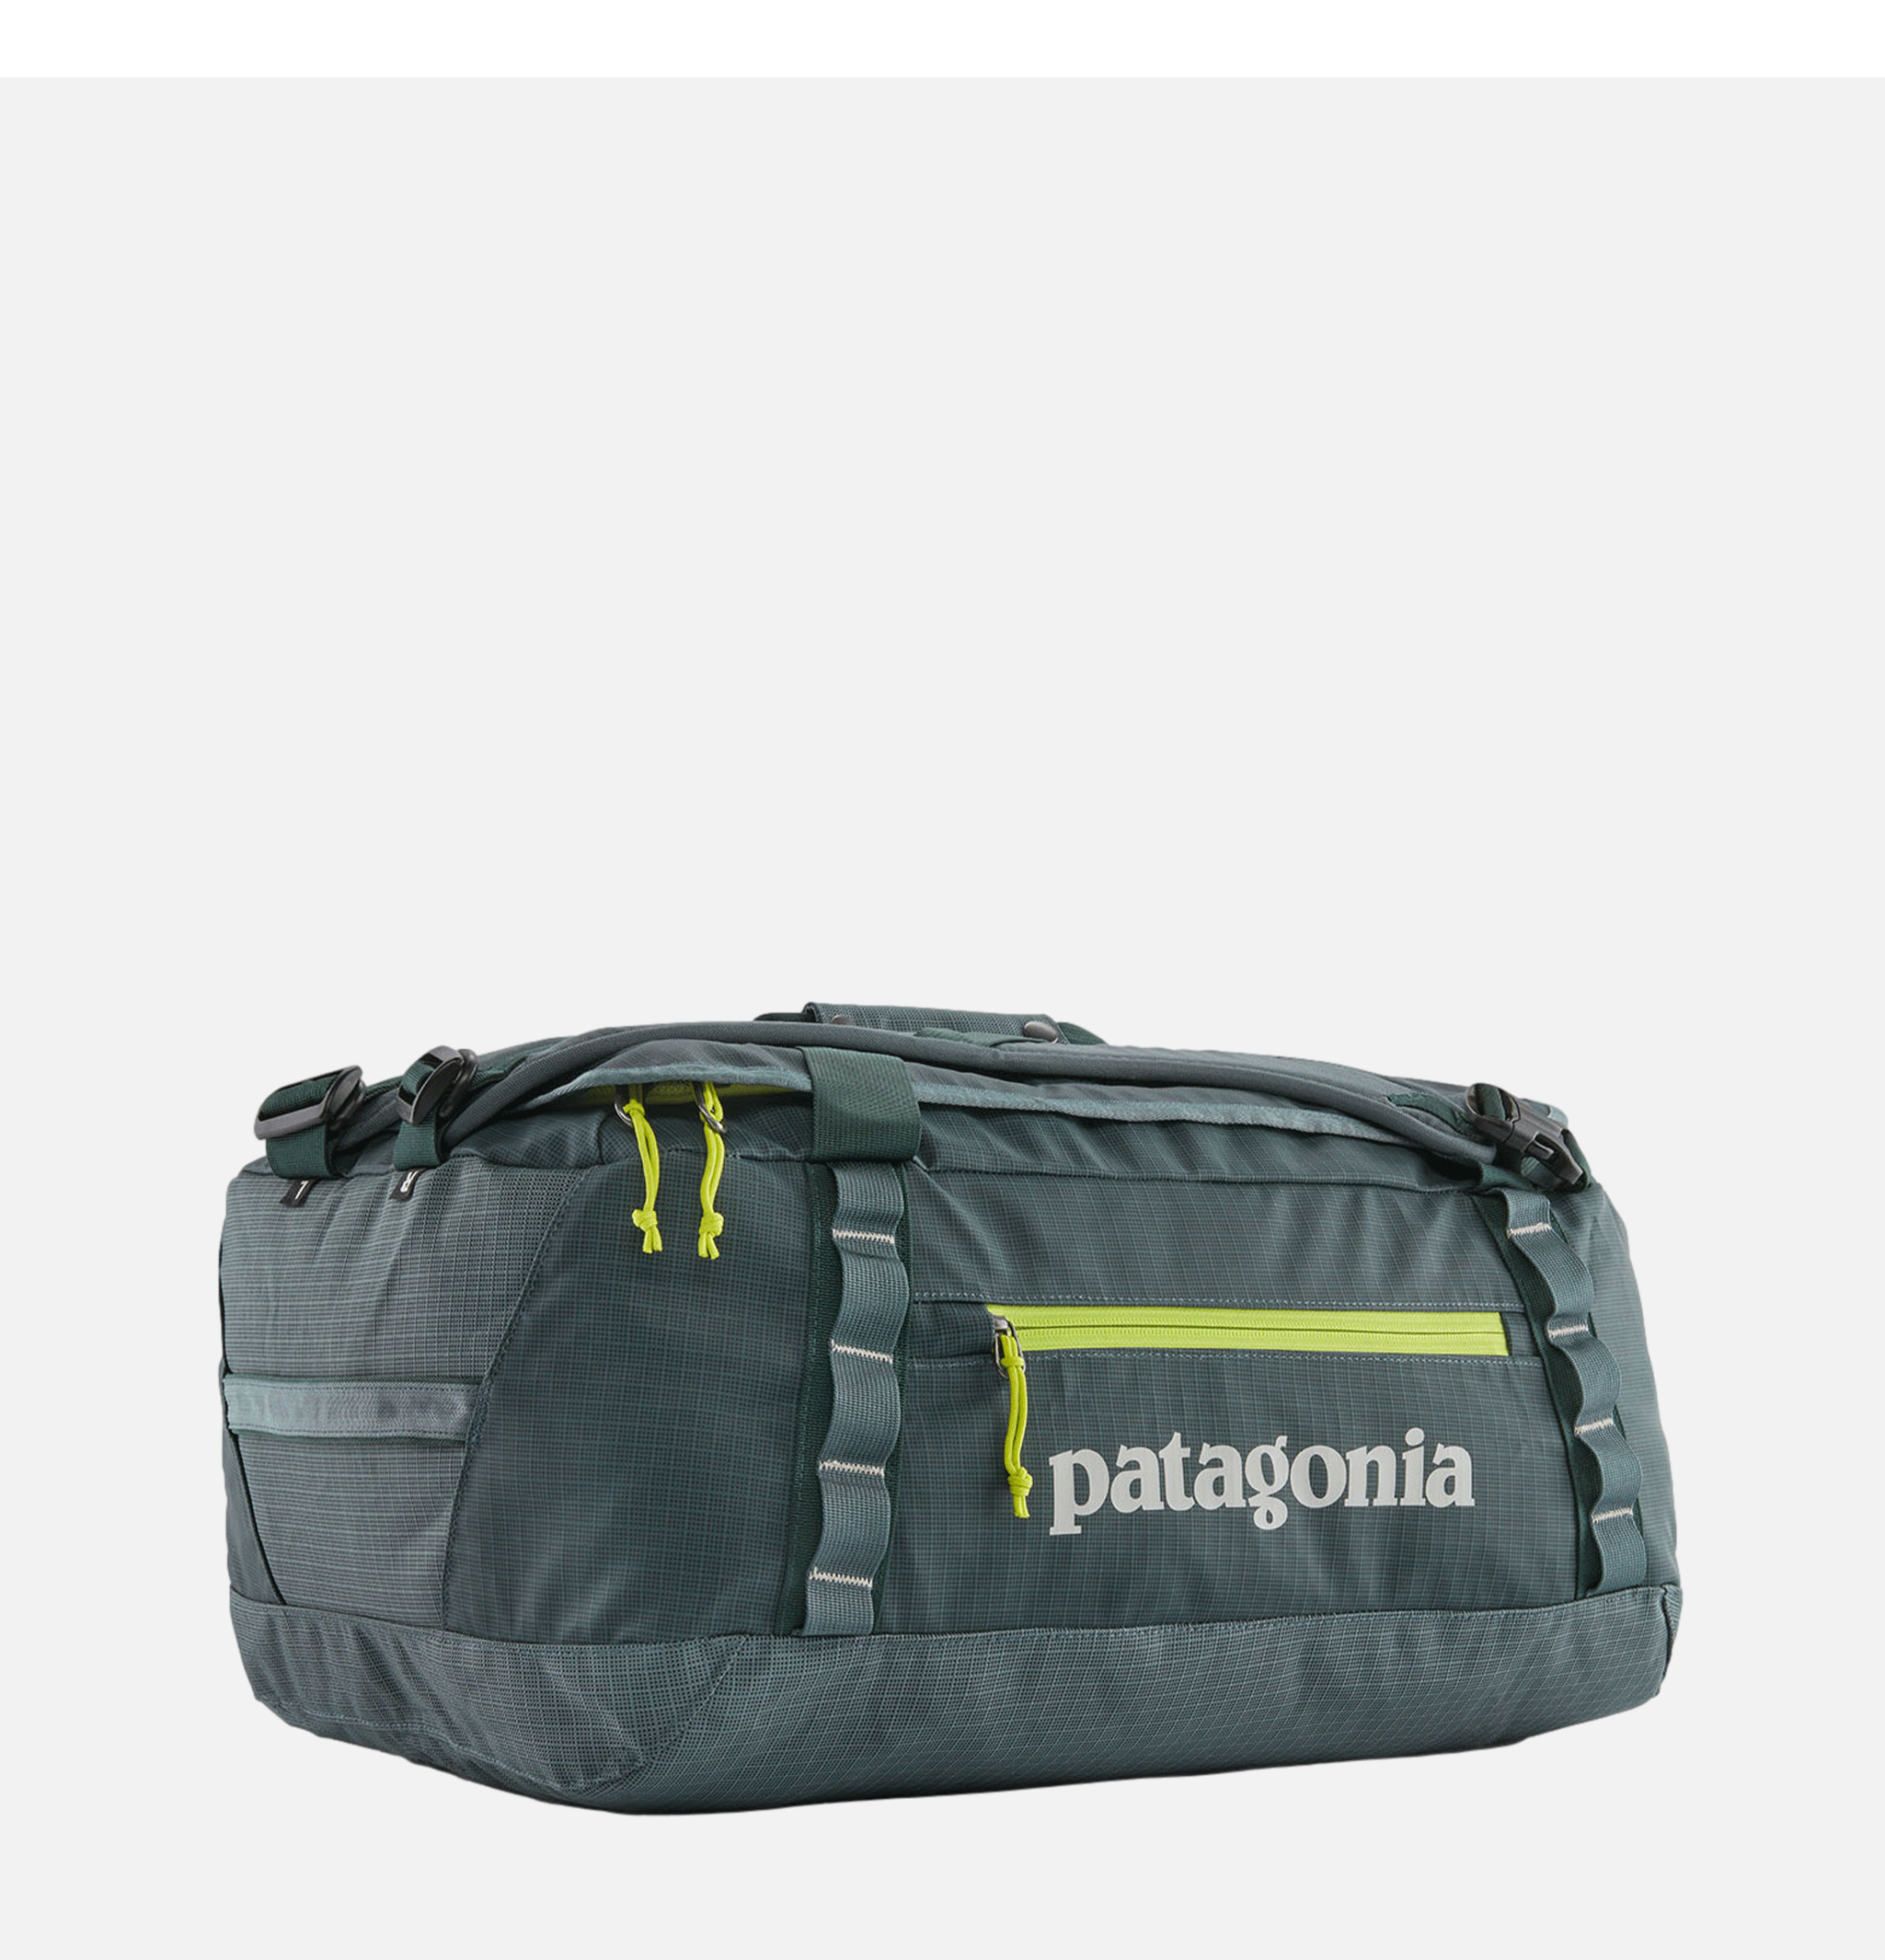 Blackhole Patagonia Accessories Duffel Bag 40l Nouveau Green